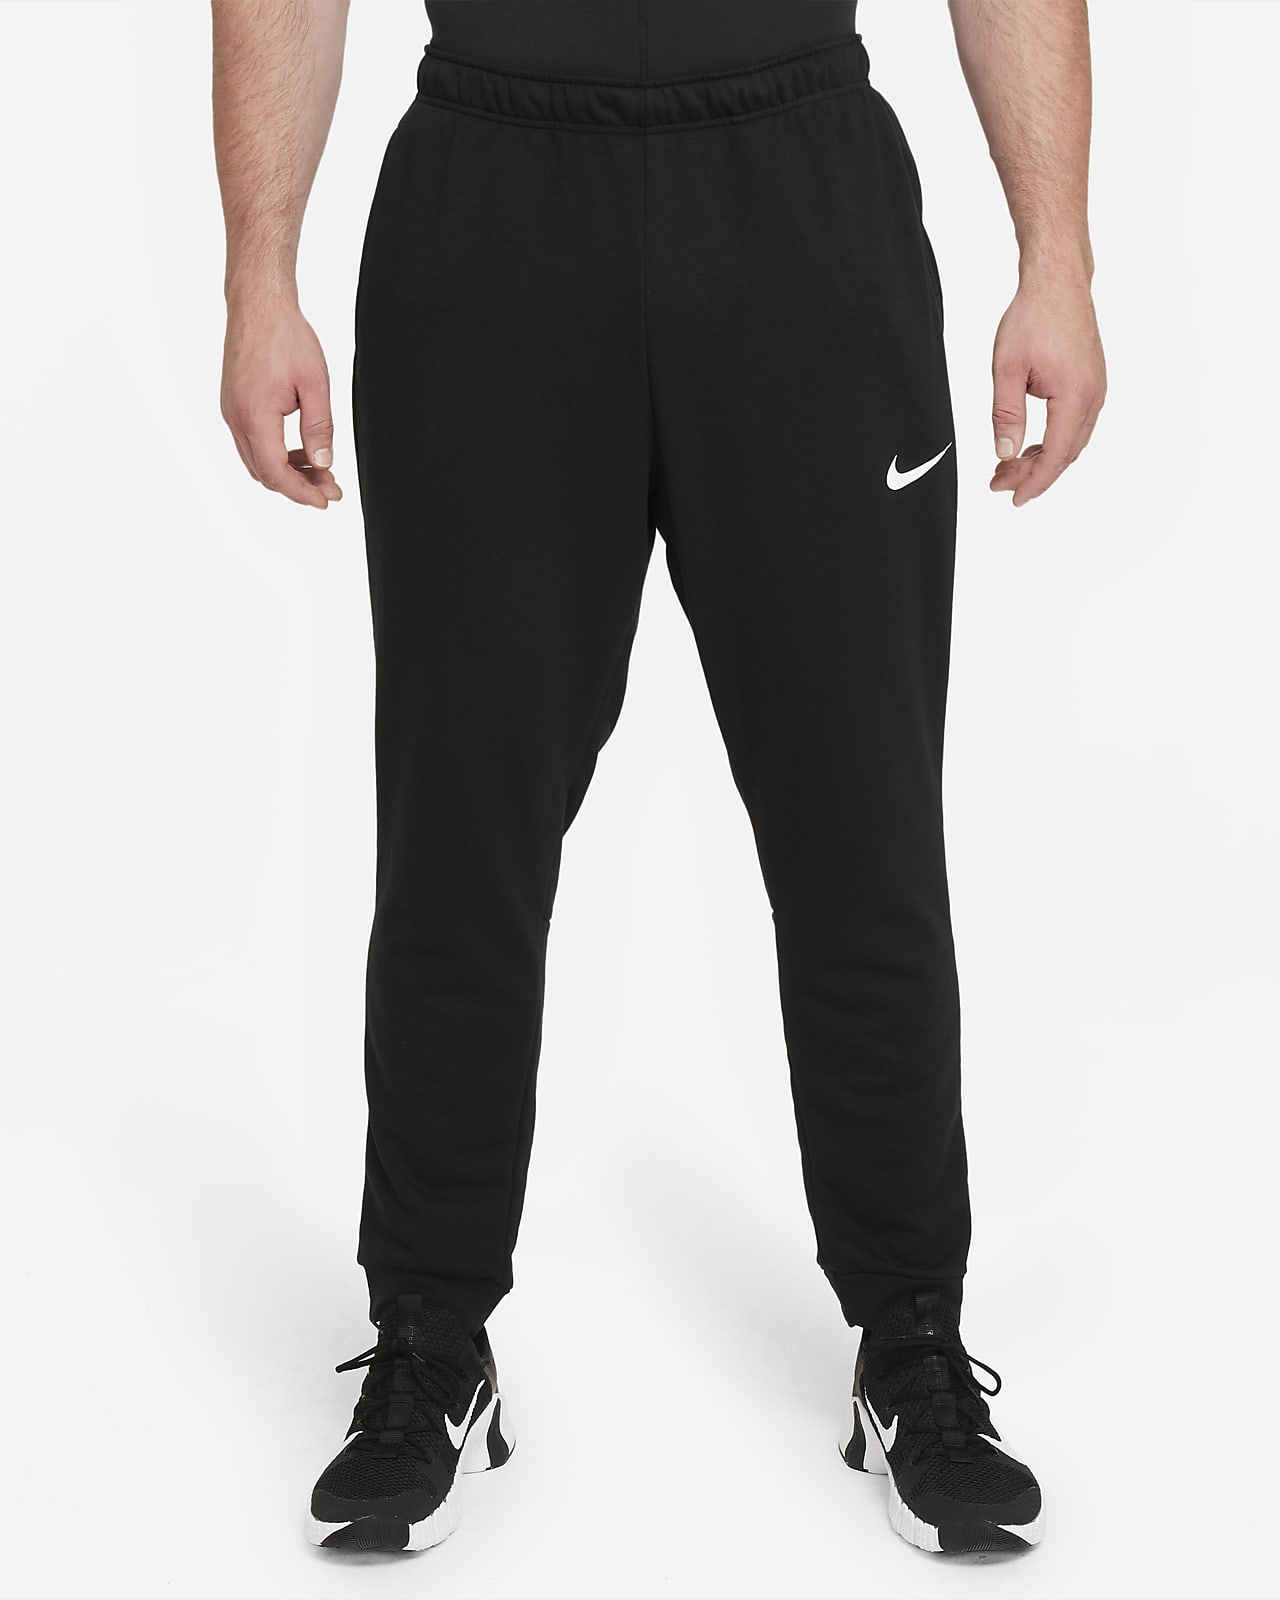 Nike Dri-FIT Men's Tapered Training Trousers. Nike NL